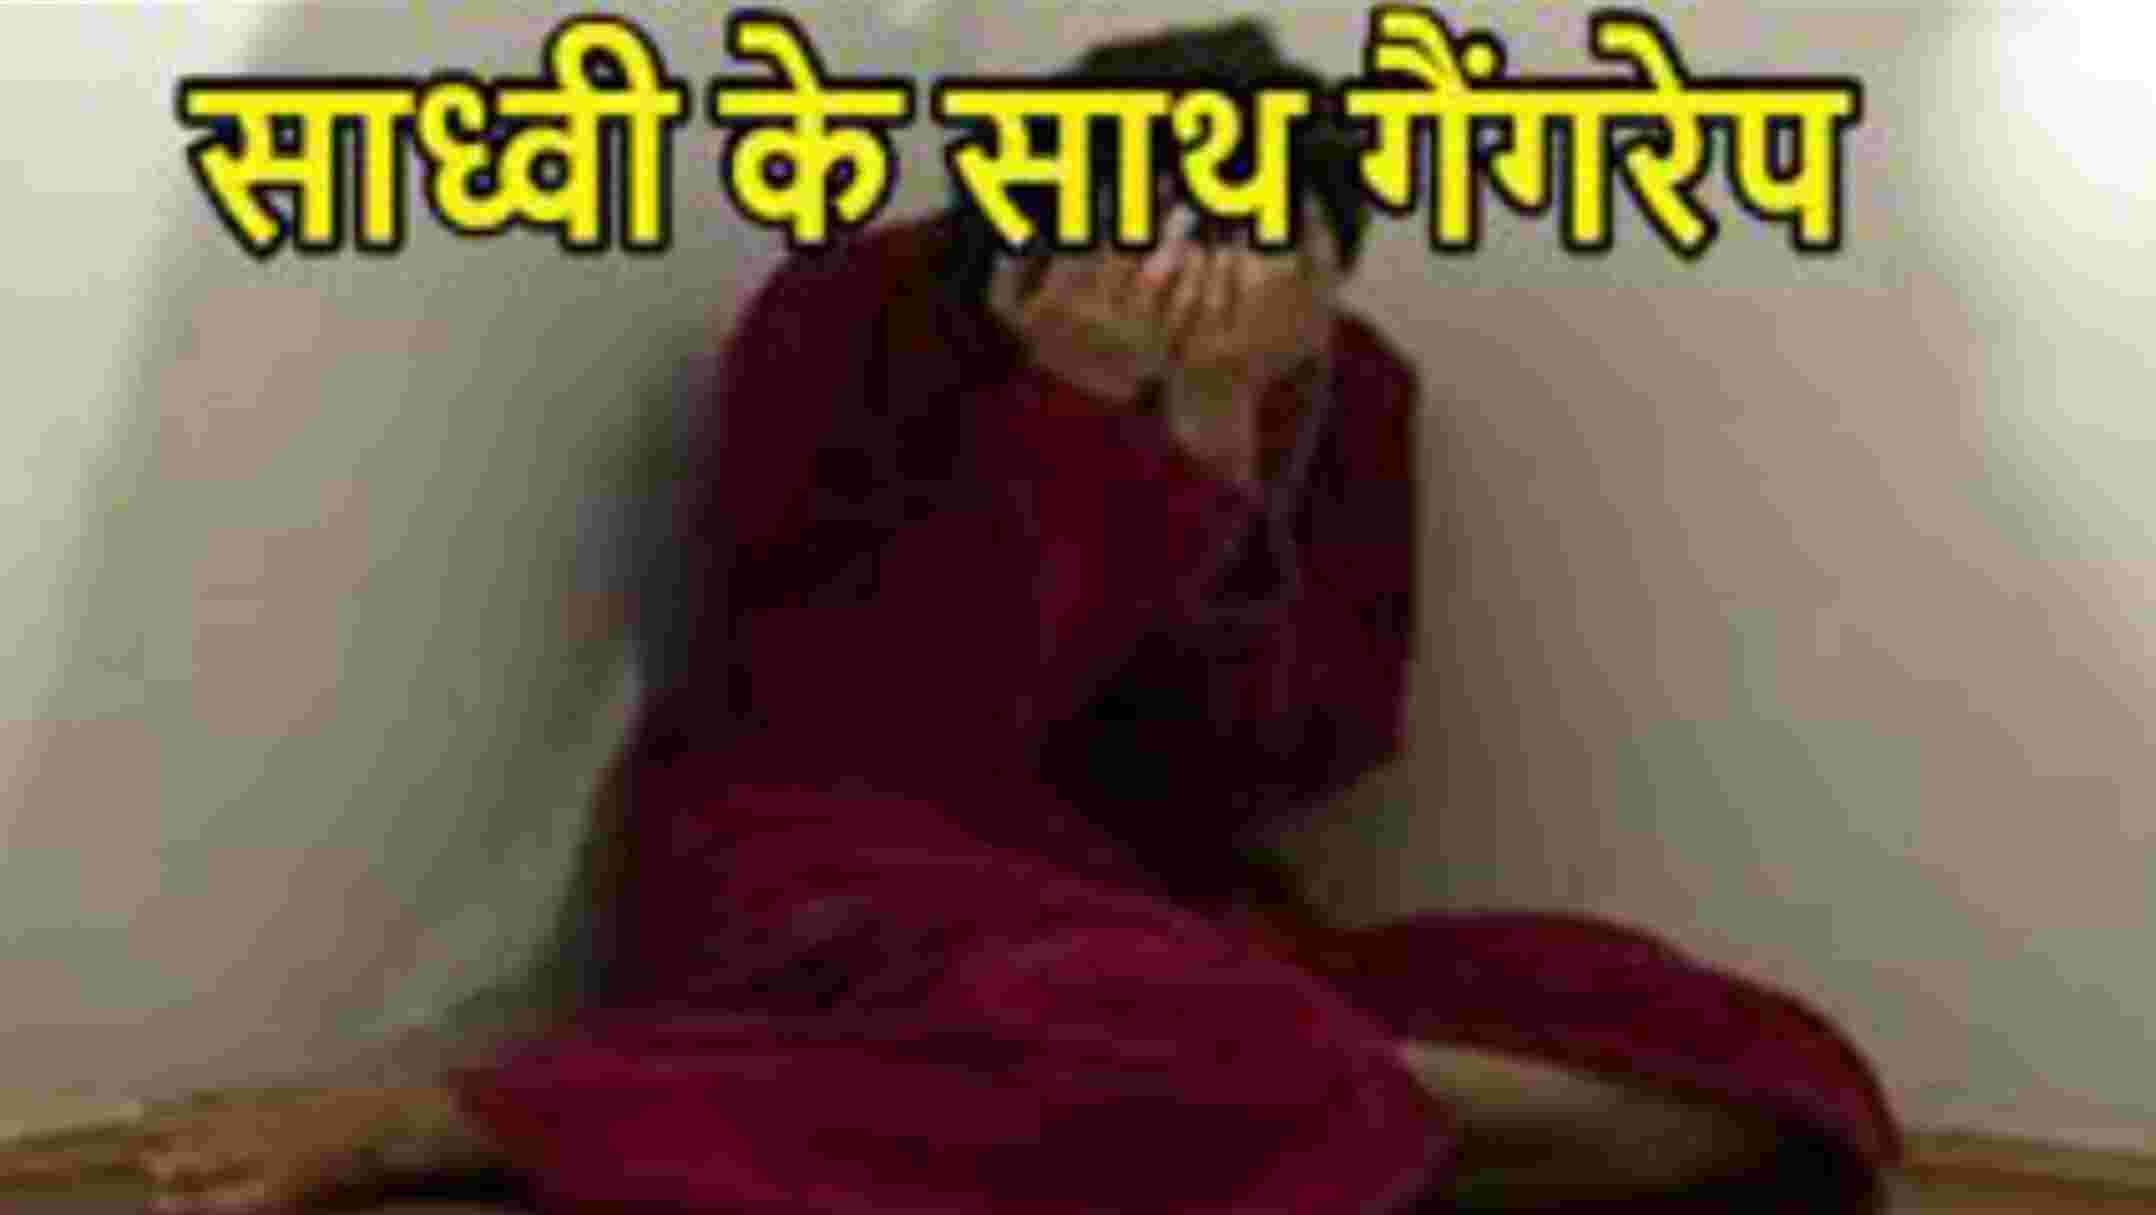 Lucknow News: लखनऊ के जानकी मंदिर आश्रम में साध्वी को नशीला पदार्थ खिलाकर चार साधकों ने किया गैंगरेप, ऐसे हुआ खुलासा